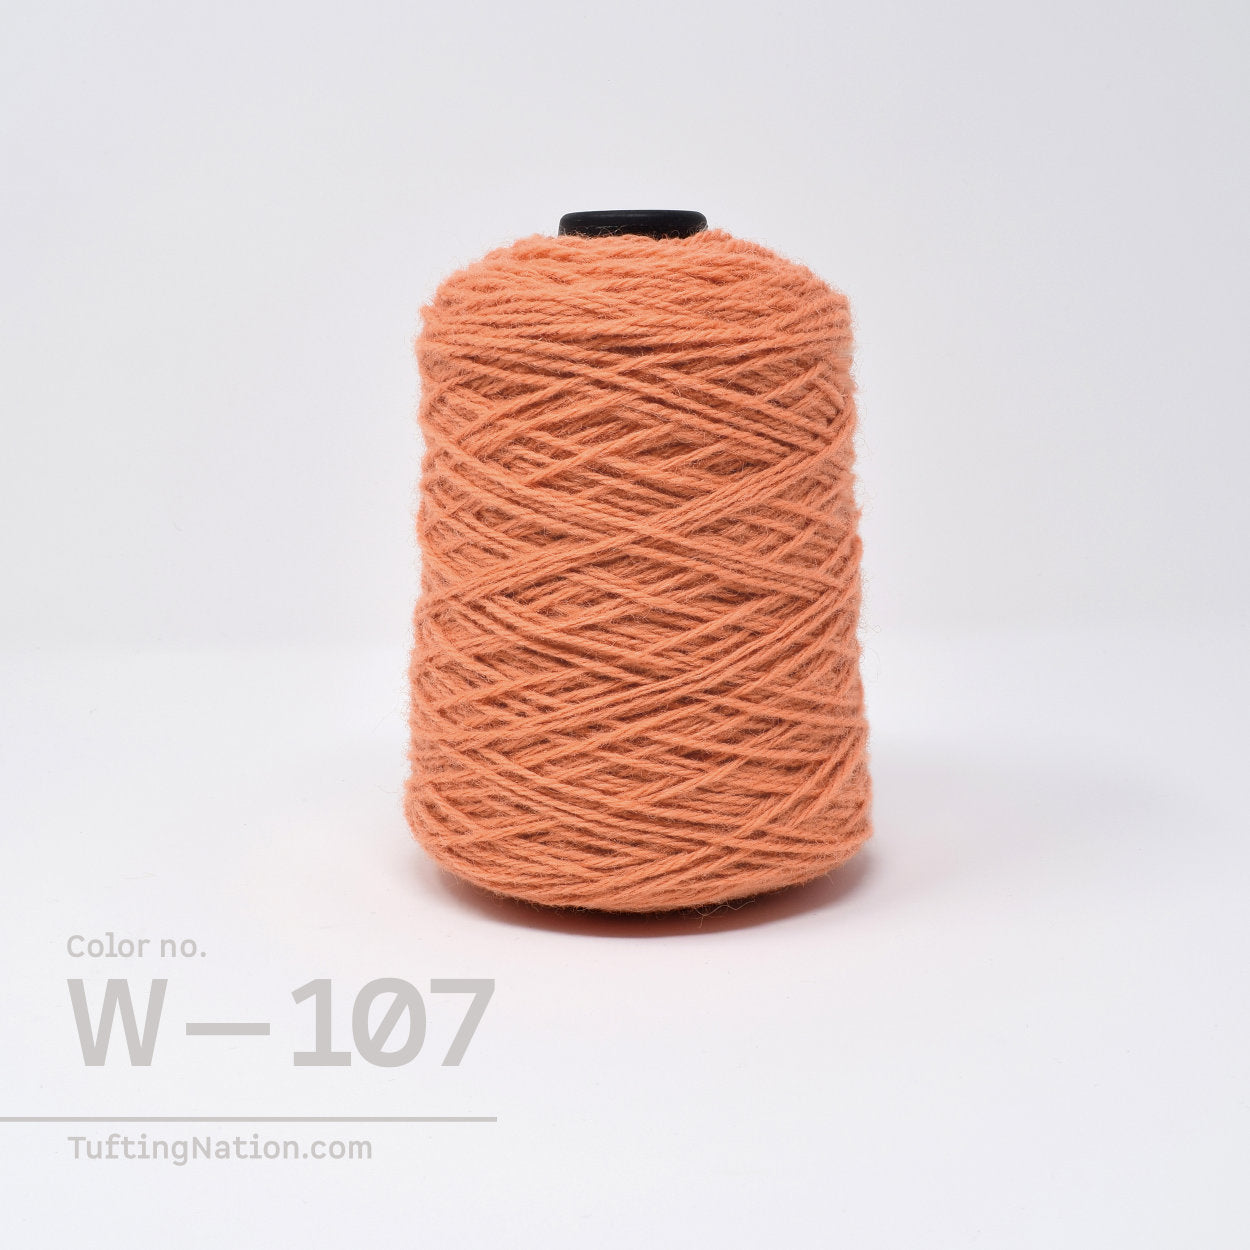 Woolen Yarn Pack - Pro Carton